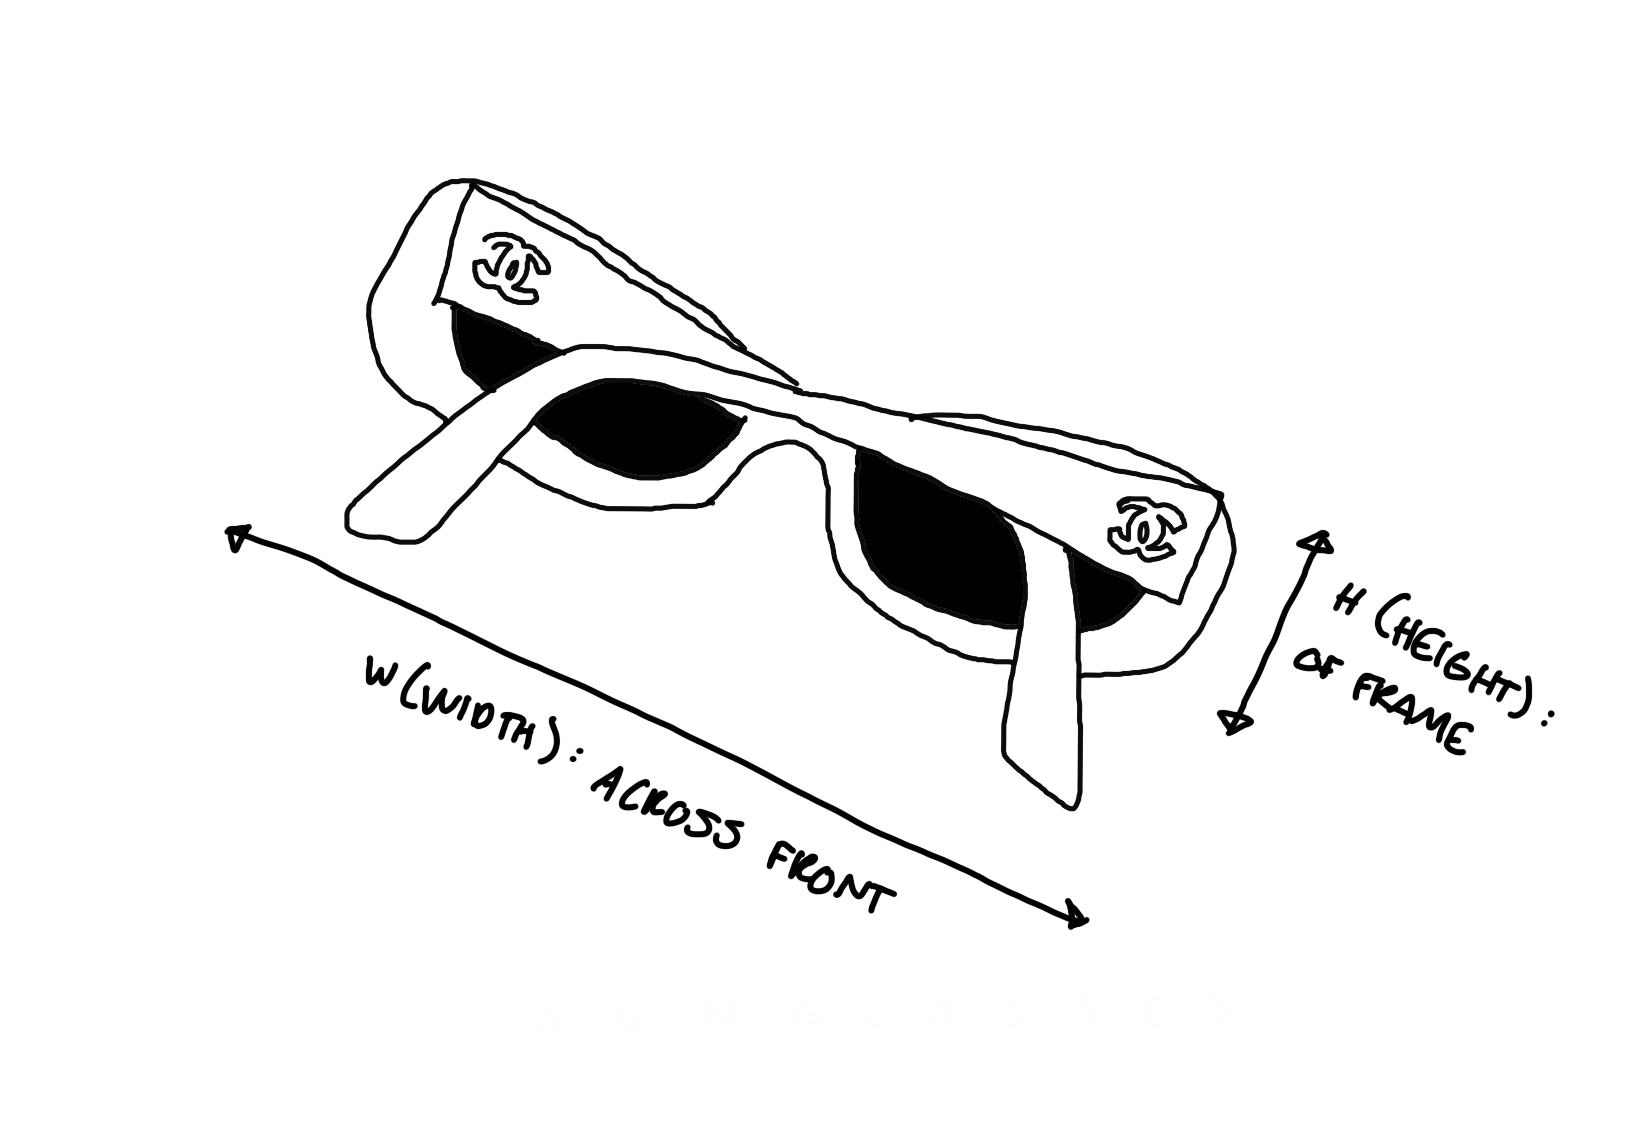 Chanel Brown Mini Rhinestone Rimless Sunglasses